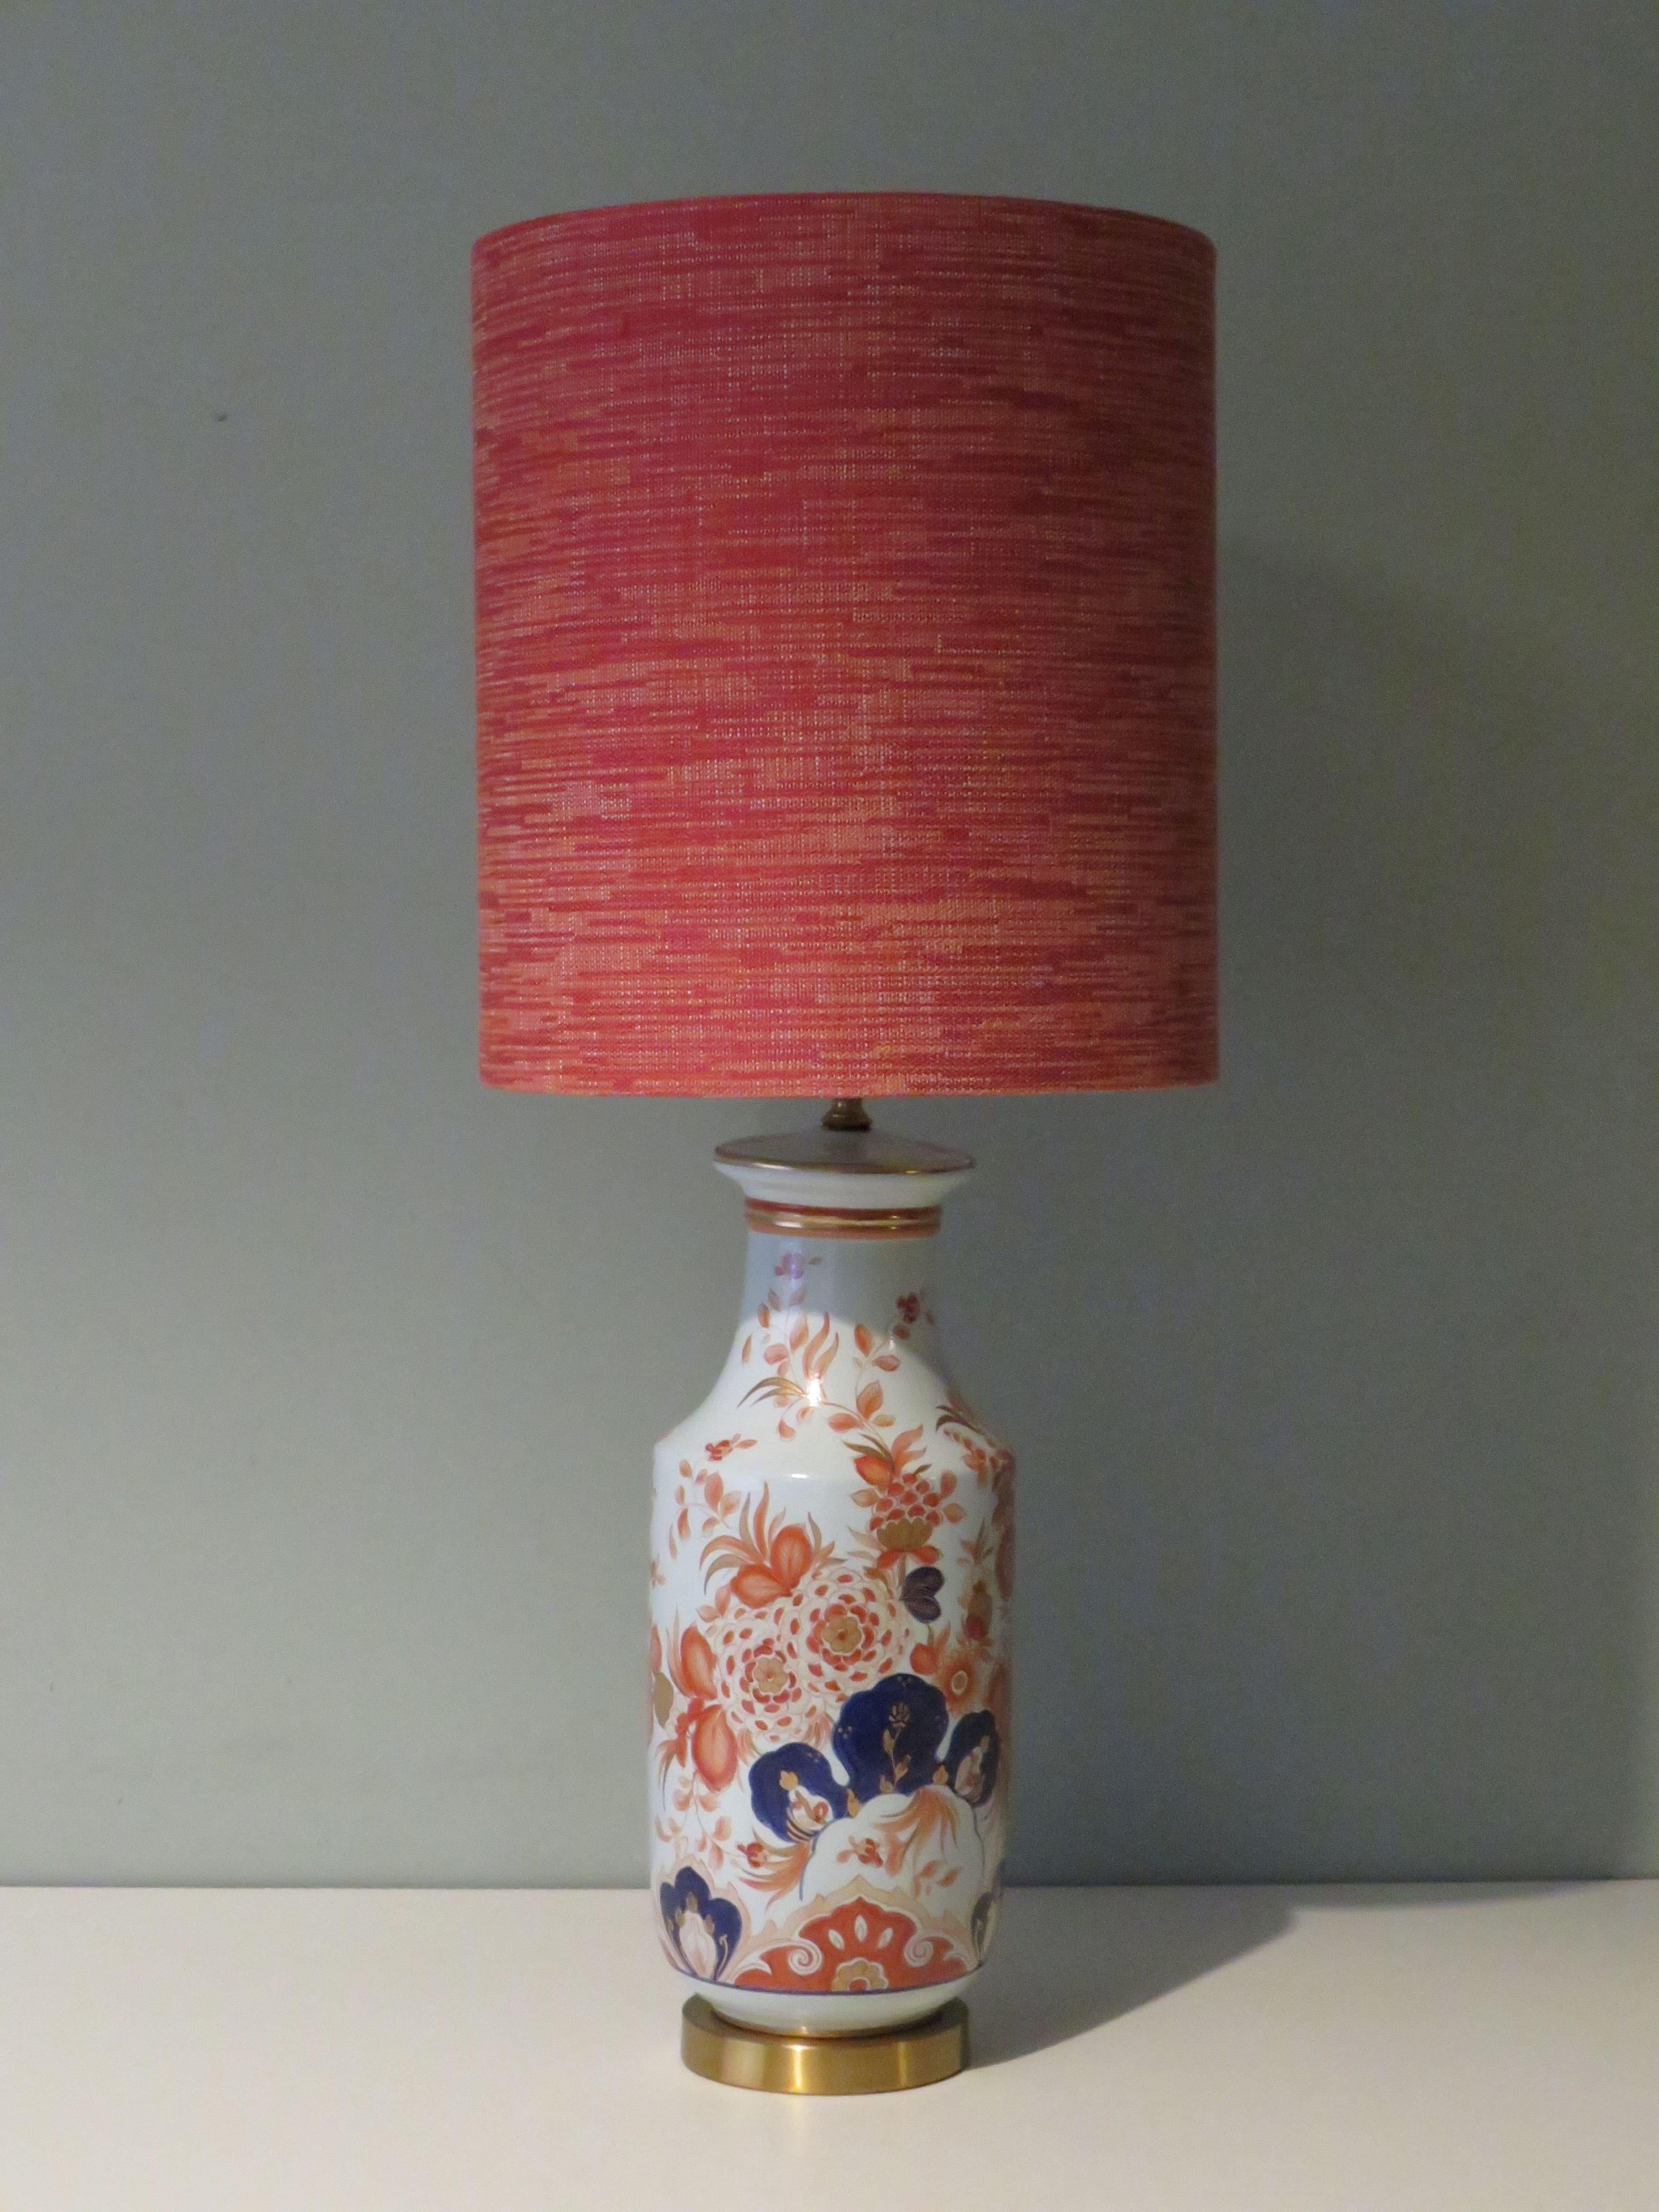 La base de la lampe présente un joli motif floral d'inspiration Imari et est montée sur un socle en laiton.
La lampe de table est dotée d'un abat-jour personnalisé fait à la main par des professionnels, en tissu velouté grossièrement tissé dans des